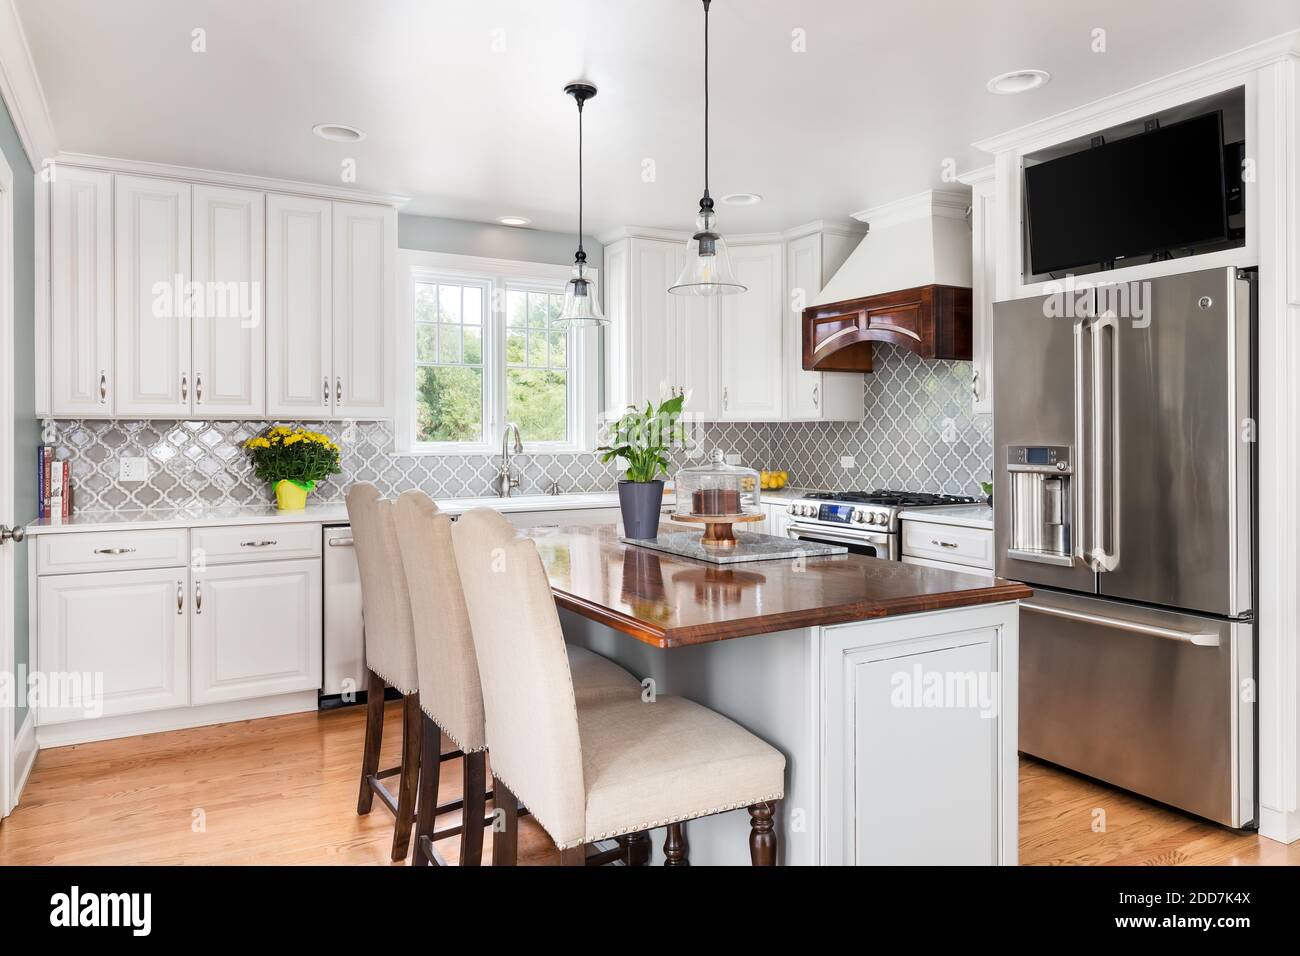 Eine neu renovierte Küche mit GE-Geräten aus Edelstahl, weißen und grauen Schränken und einem Fernseher über dem Kühlschrank. Stockfoto